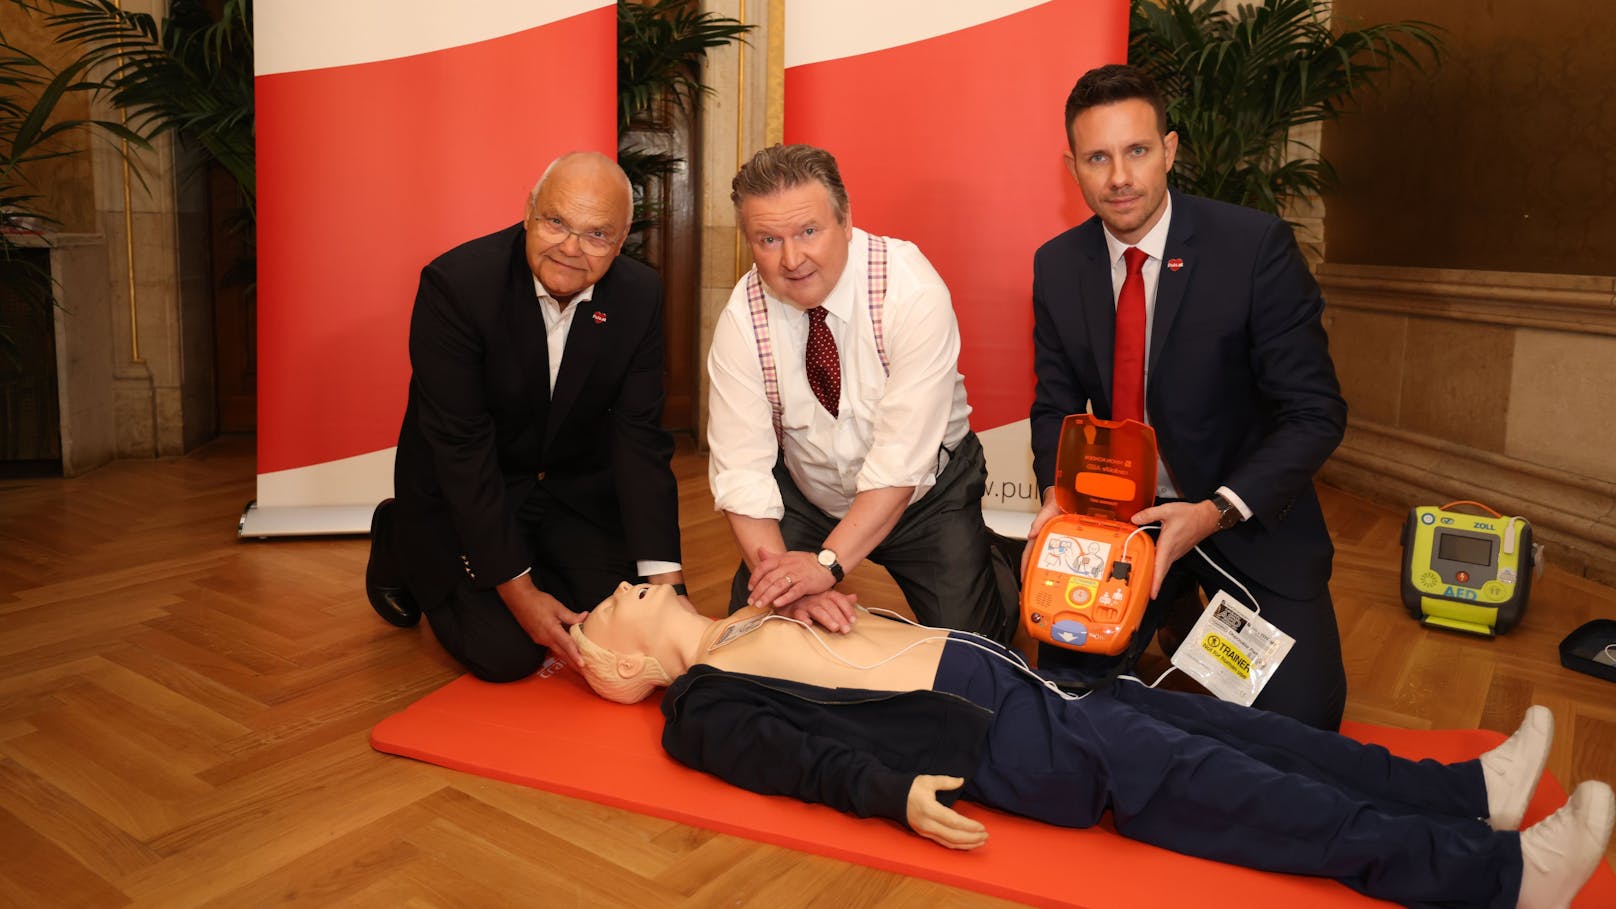 Bürgermeister Michael Ludwig (SPÖ) bei einer Herzdruckmassage. Am Dienstag stellte er zusammen mit dem Verein PULS die neue Kampagne "Hände können Leben retten" vor. Dabei geht es um Lebensrettung durch den Einsatz von Händen und Defibrillatoren nach einem Herzstillstand durch nicht-medizinisches Personal.